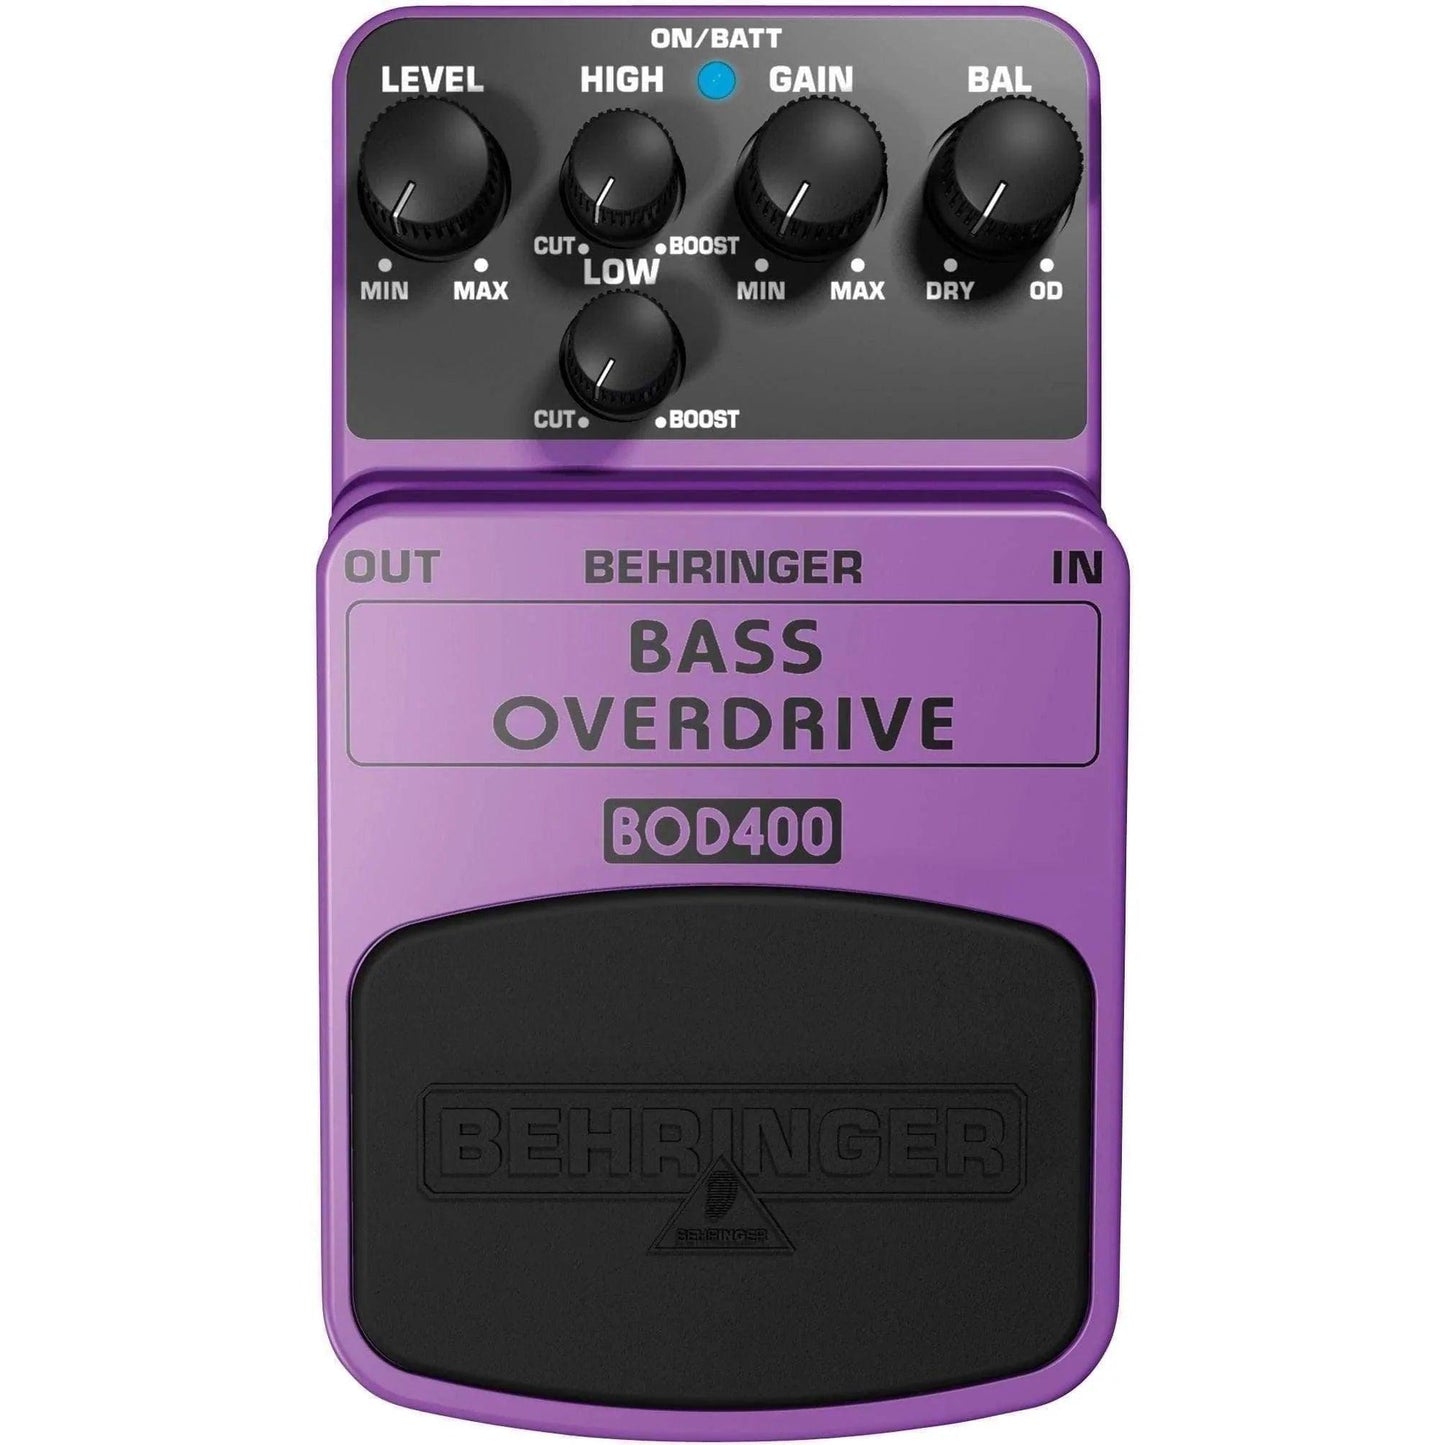 Behringer Bass Overdrive BOD400 Bass Effects Pedal